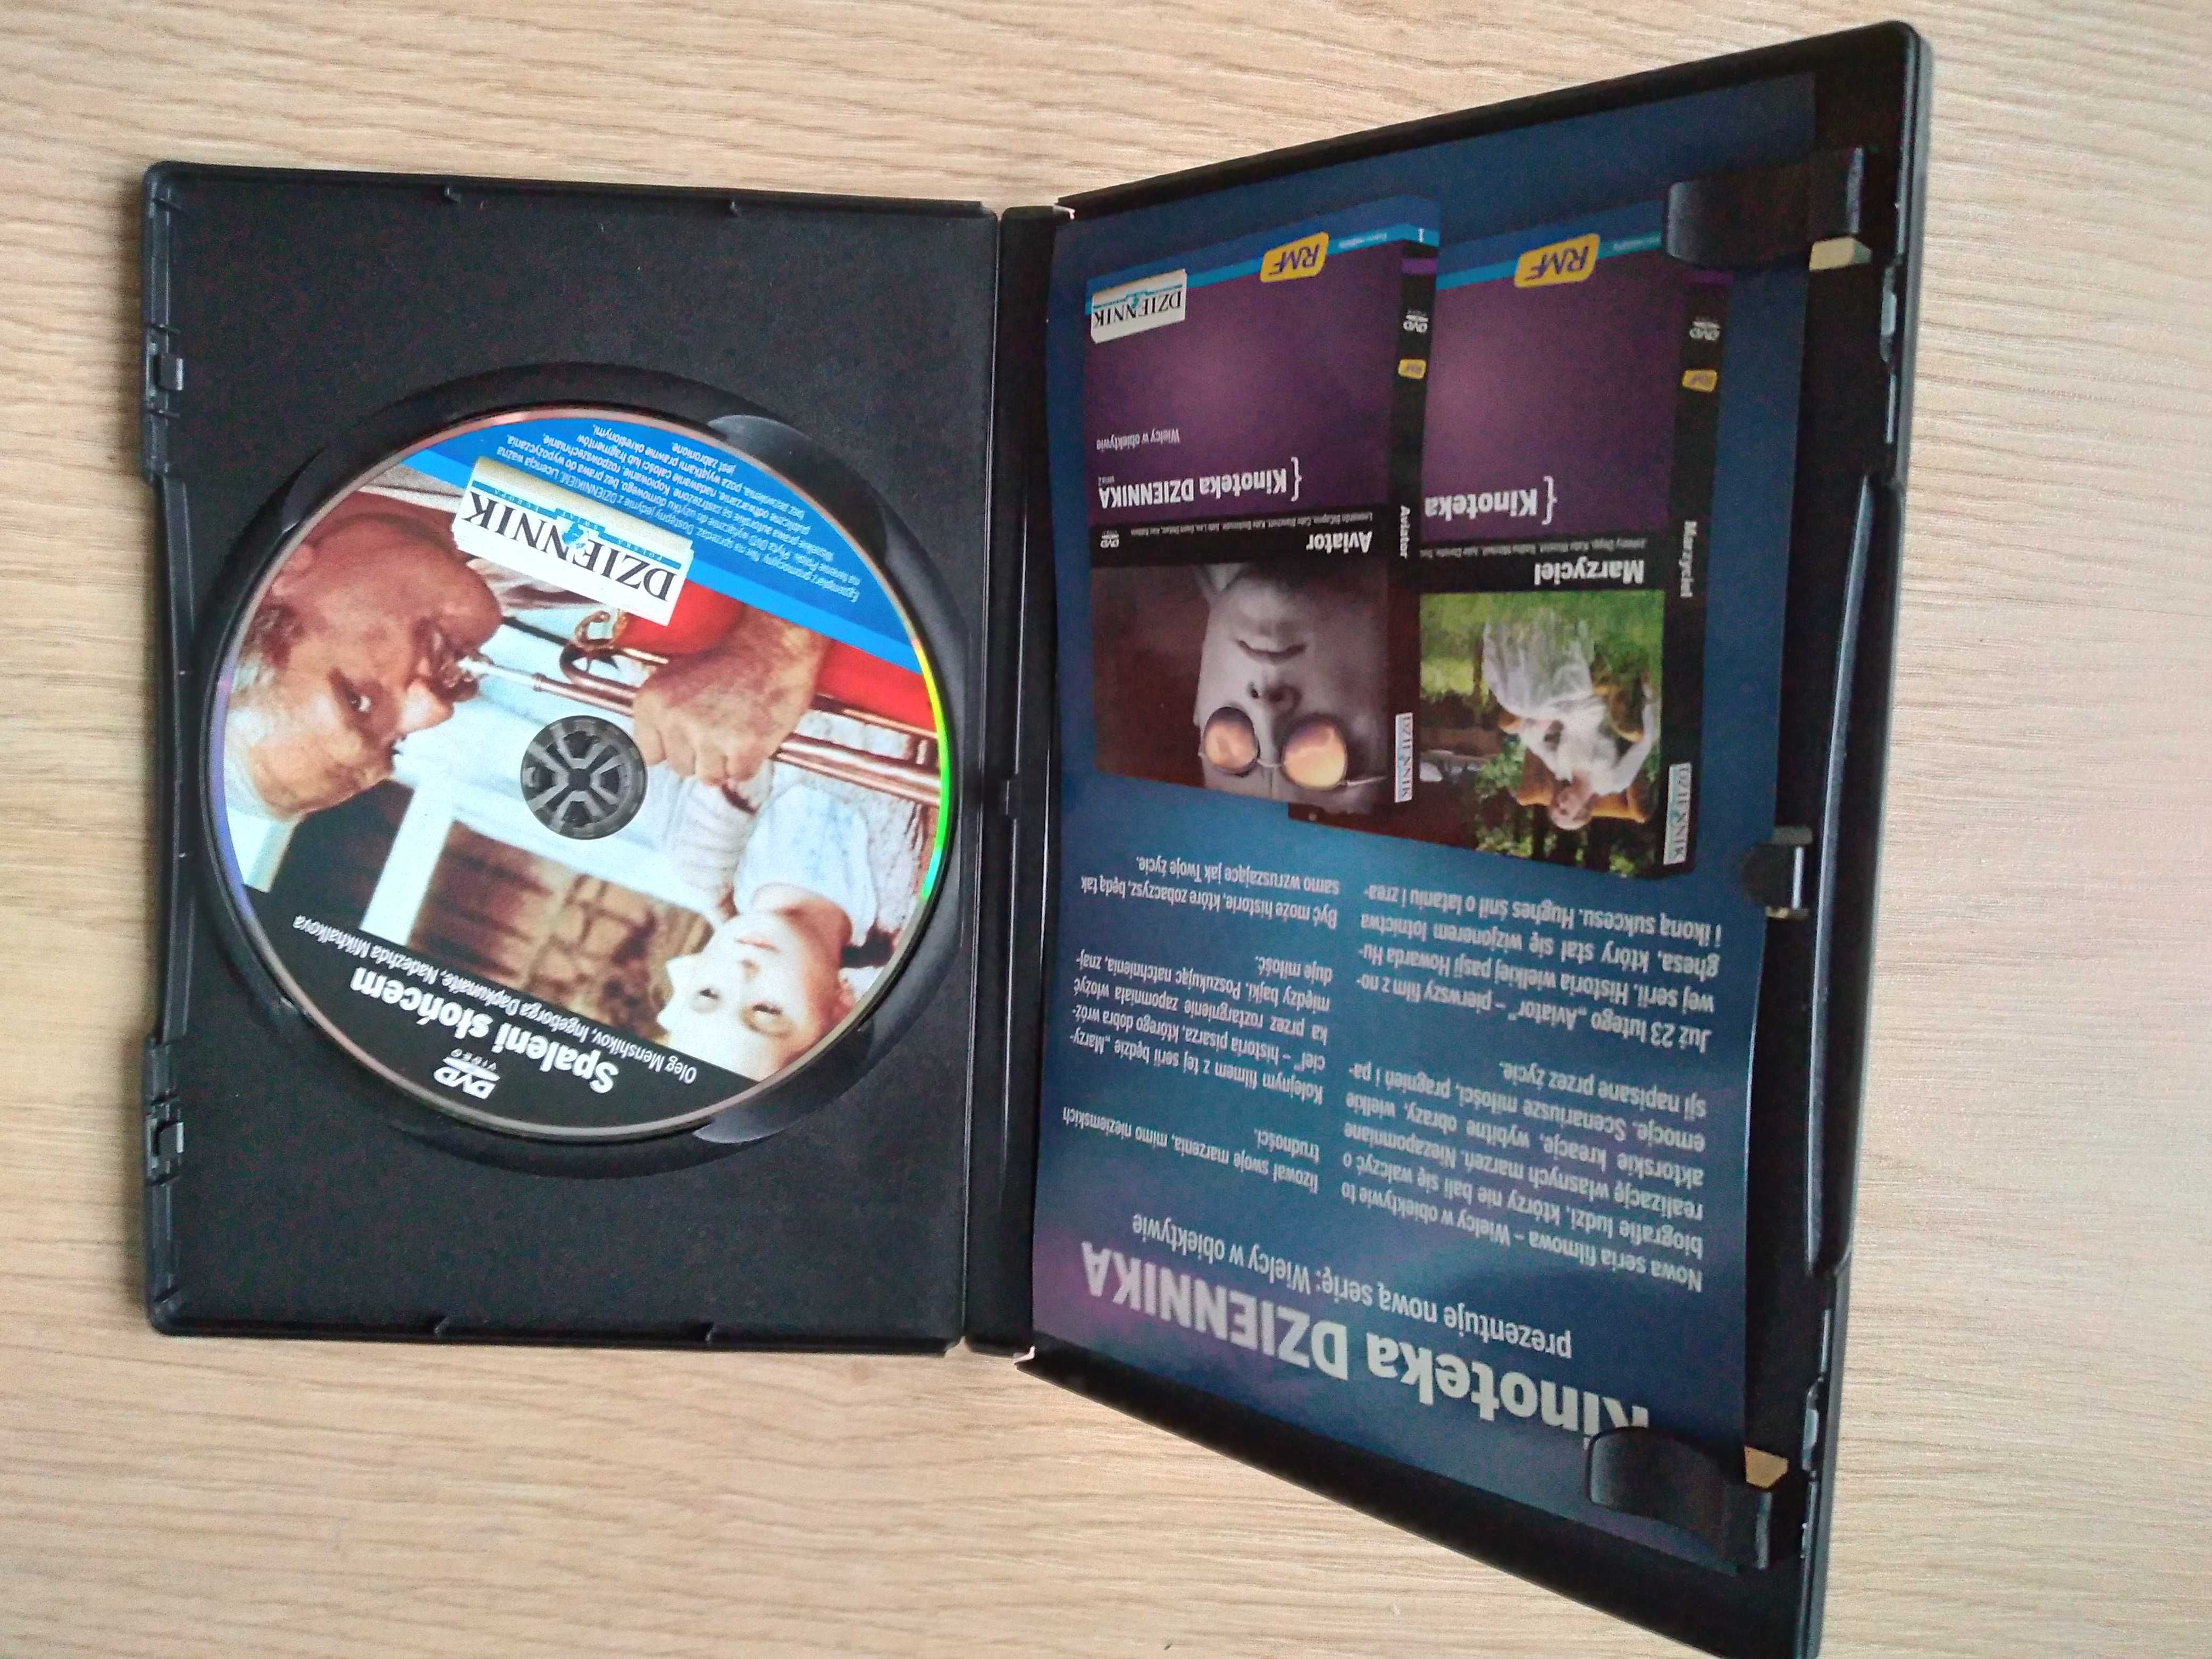 Film Spaleni Słońcem (DVD)